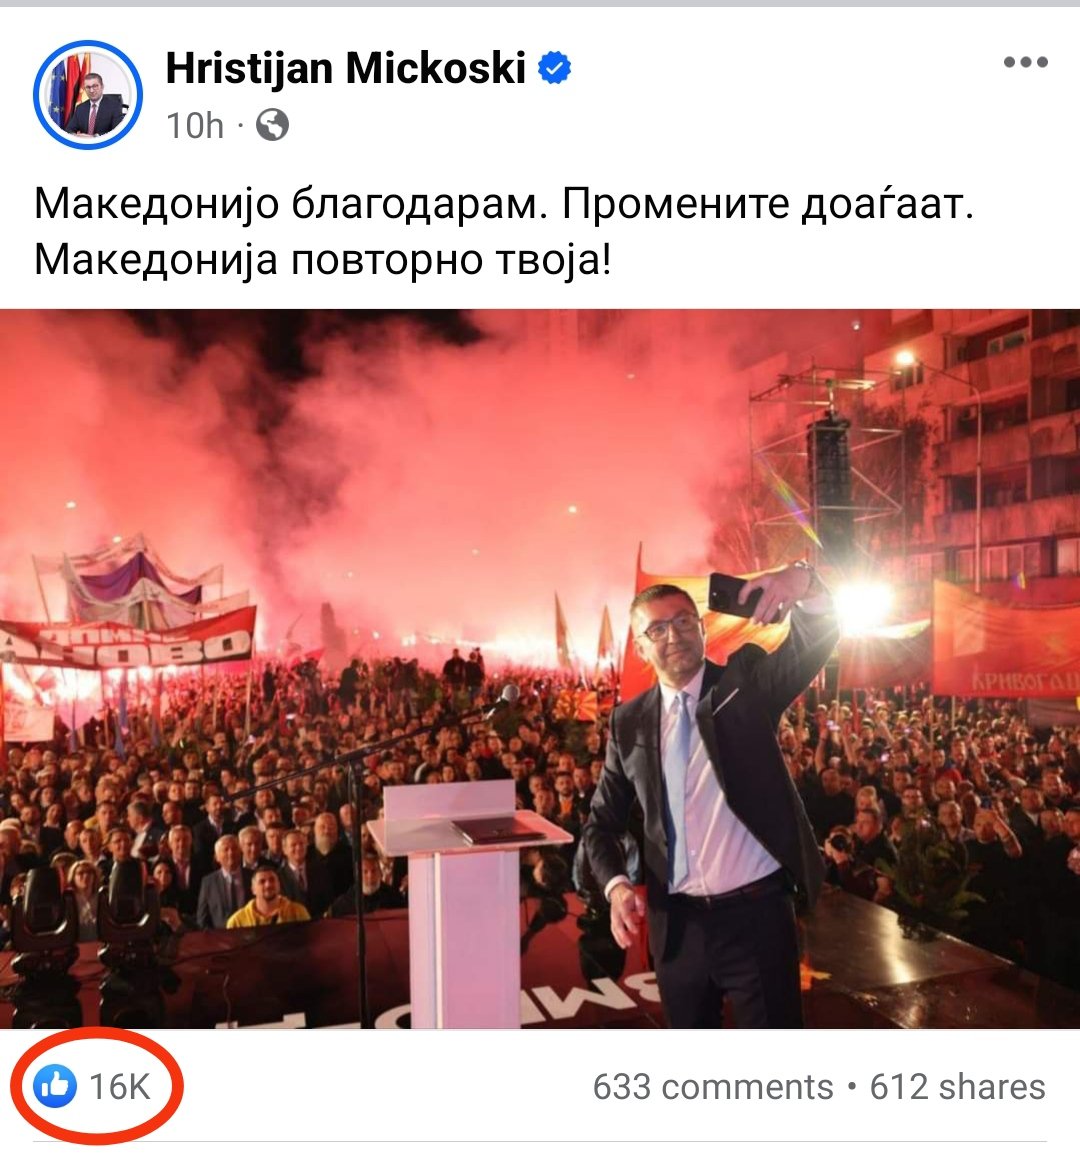 Постов од @MickoskiHM не е спонзориран, а само за 10 часа има 16 000 лајкови. Ве молам да го поздравиме идниот Премиер на Македонија!